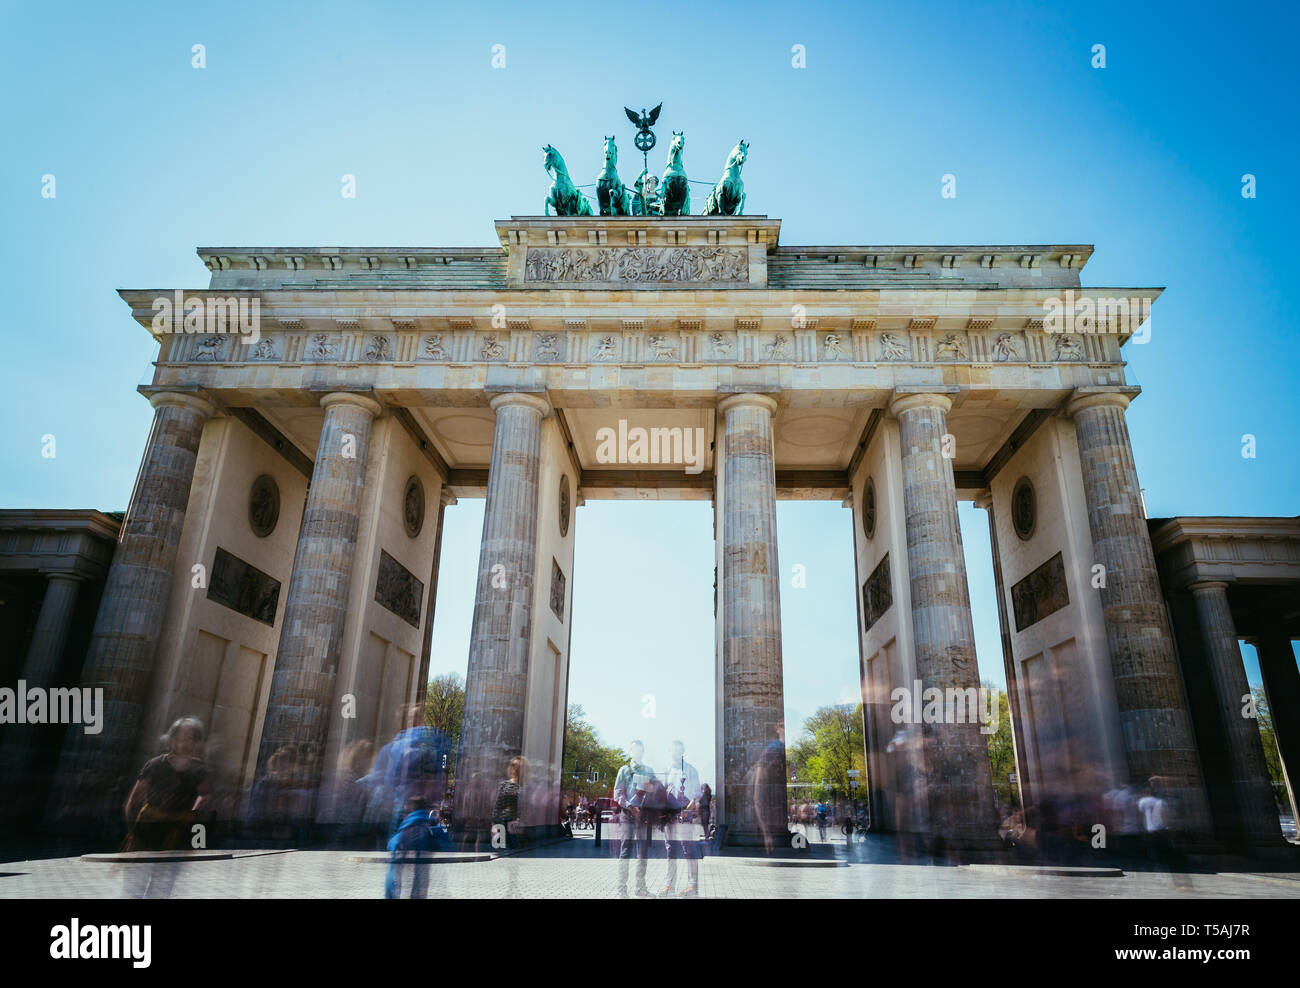 Imagen frontal de la Puerta de Brandenburgo en Berlín, Alemania, en la época estival. Foto de stock